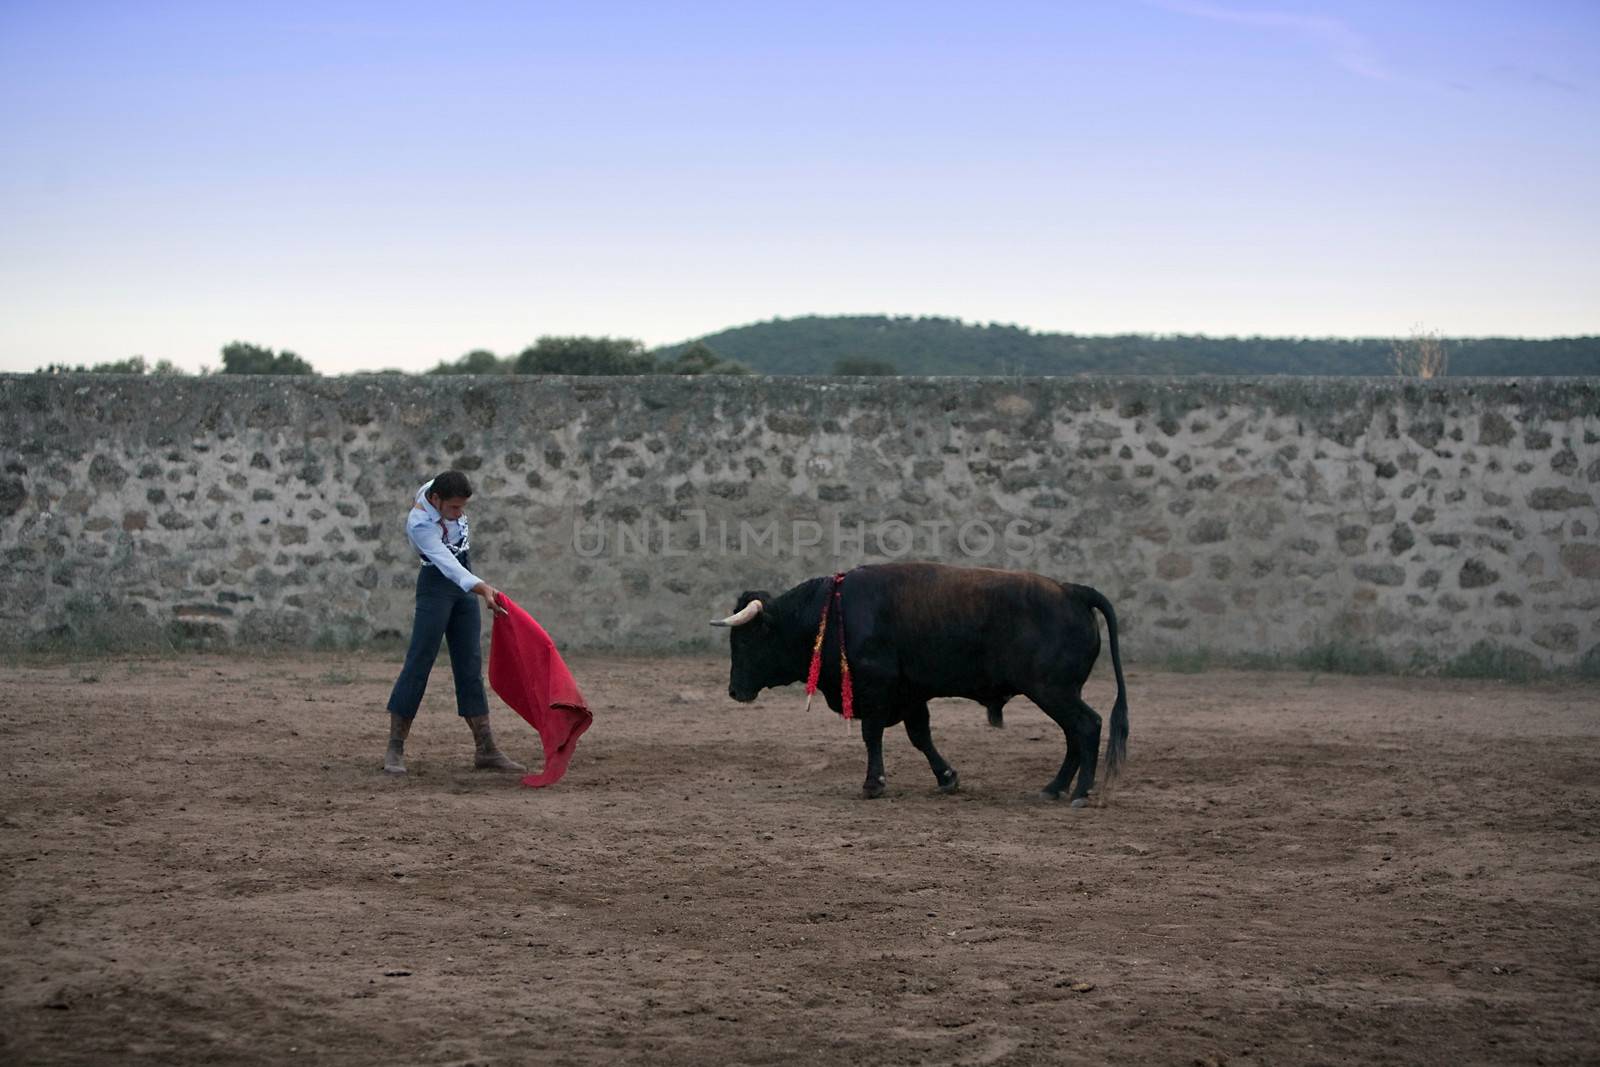 The Spanish bullfighter David Valiente Bullfight at tentadero, Jaen, Spain, 8 september 2009